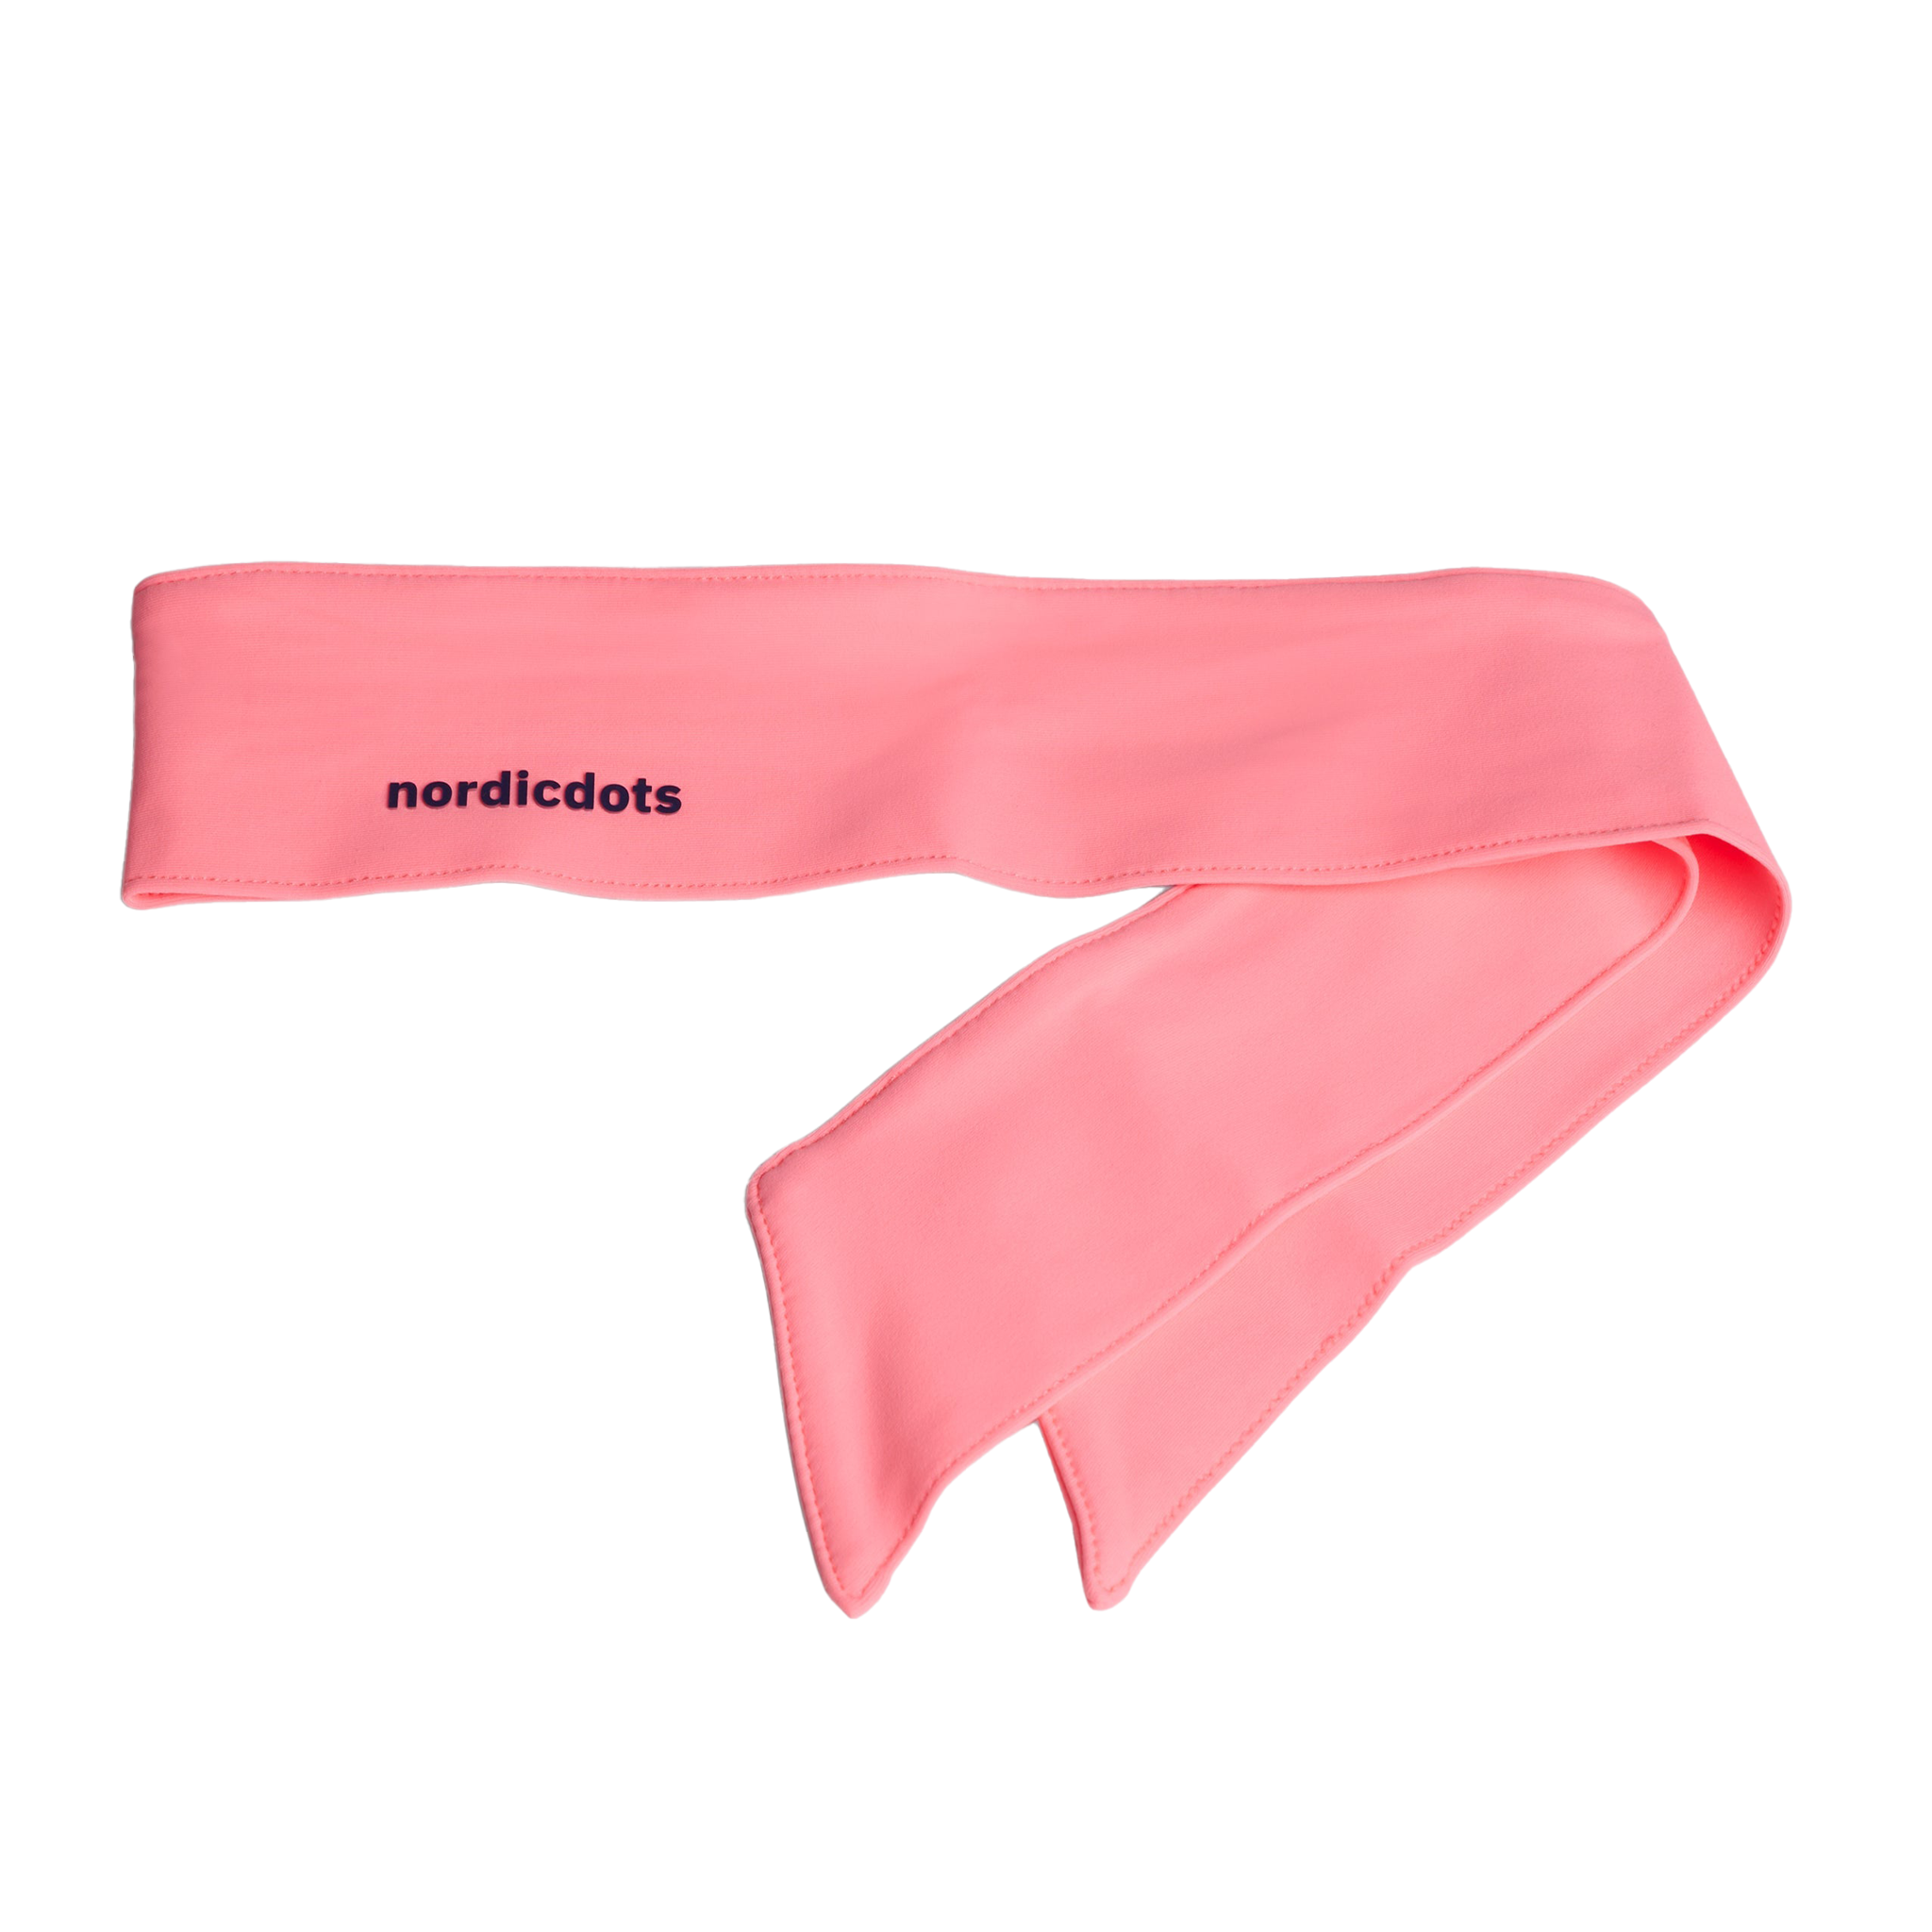 nordicdots Men's Match Headband Melon